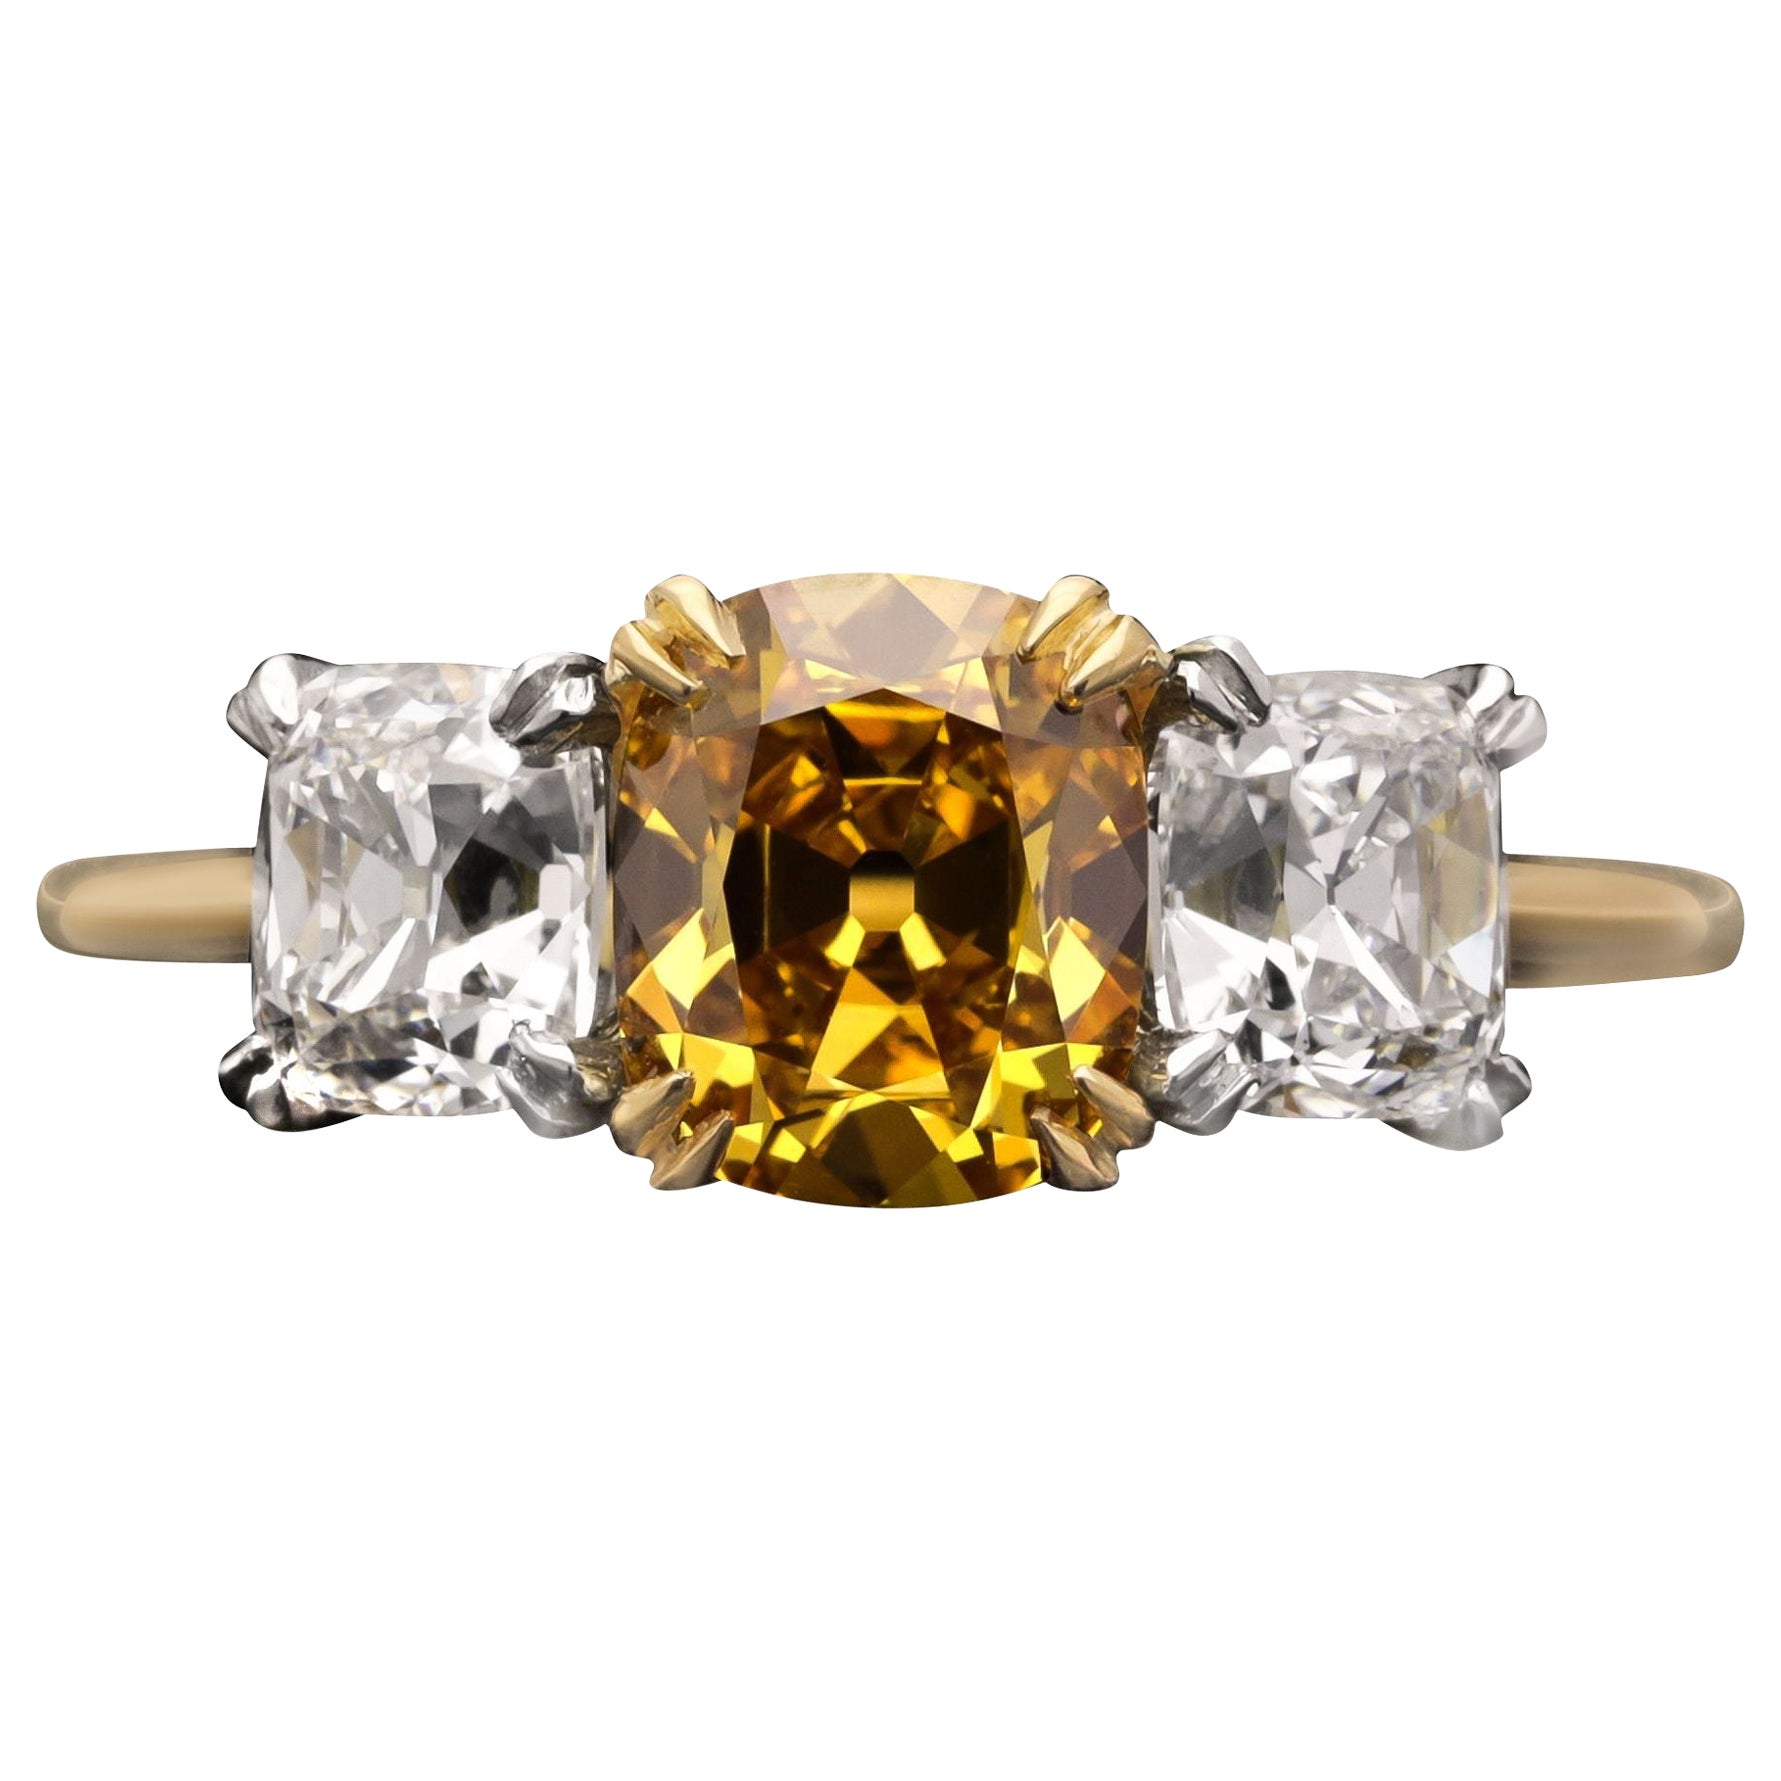 Hancocks - Bague de 1,42 carat de diamant jaune orangé foncé avec épaulements en diamant